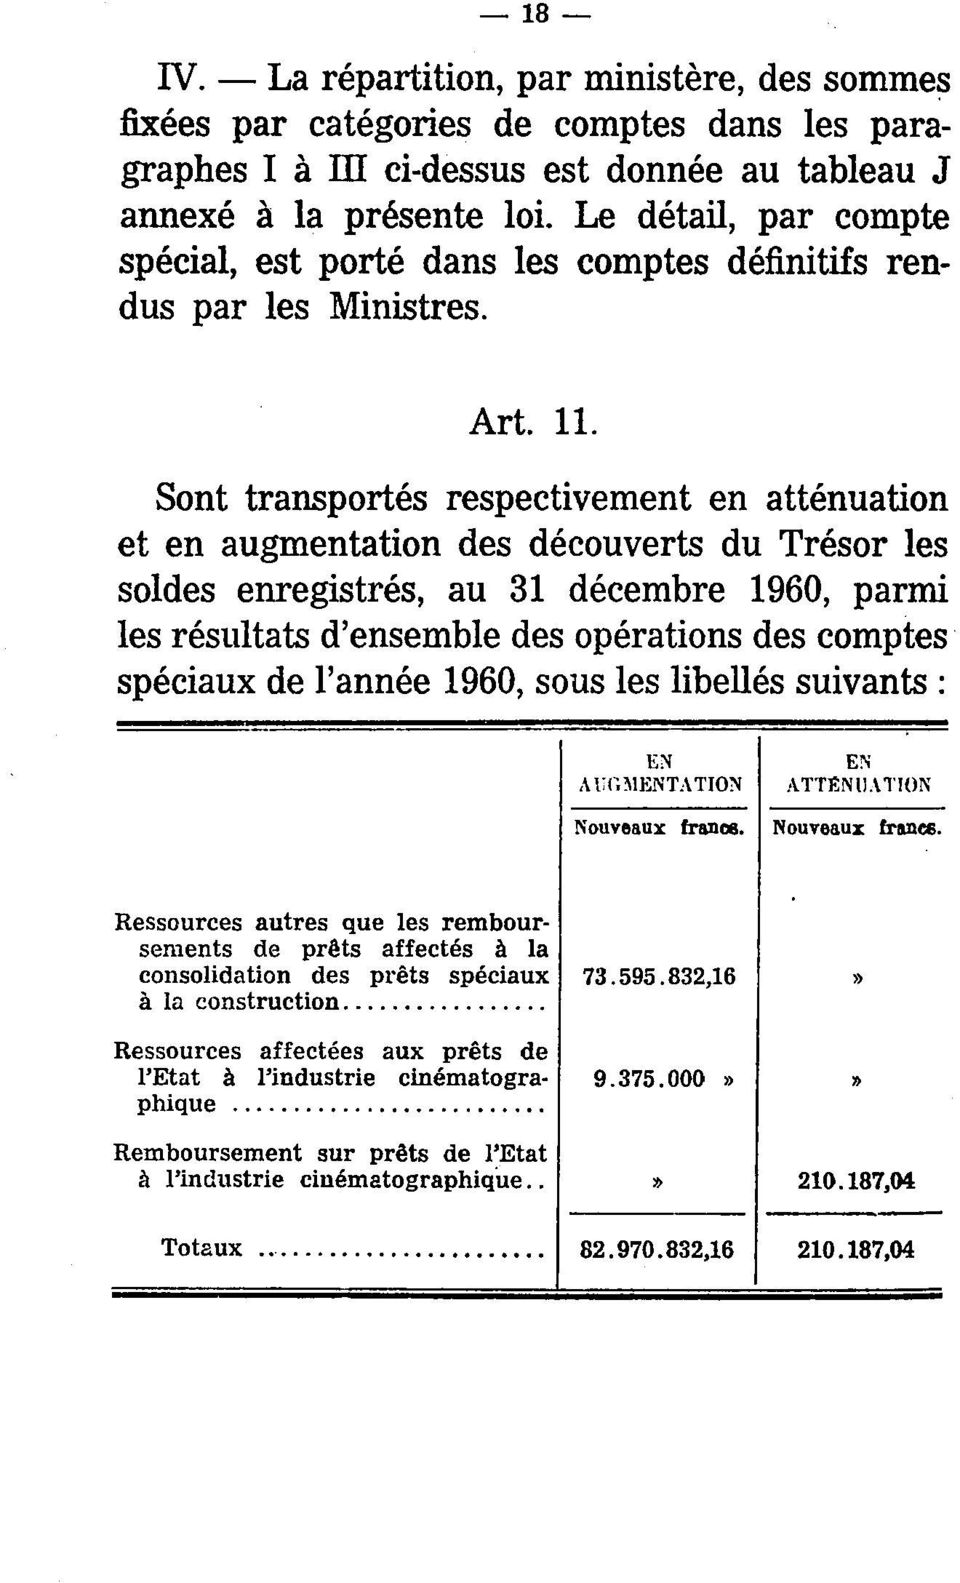 Sont transportés respectivement en atténuation et en augmentation des découverts du Trésor les soldes enregistrés, au 31 décembre 1960, parmi les résultats d'ensemble des opérations des comptes